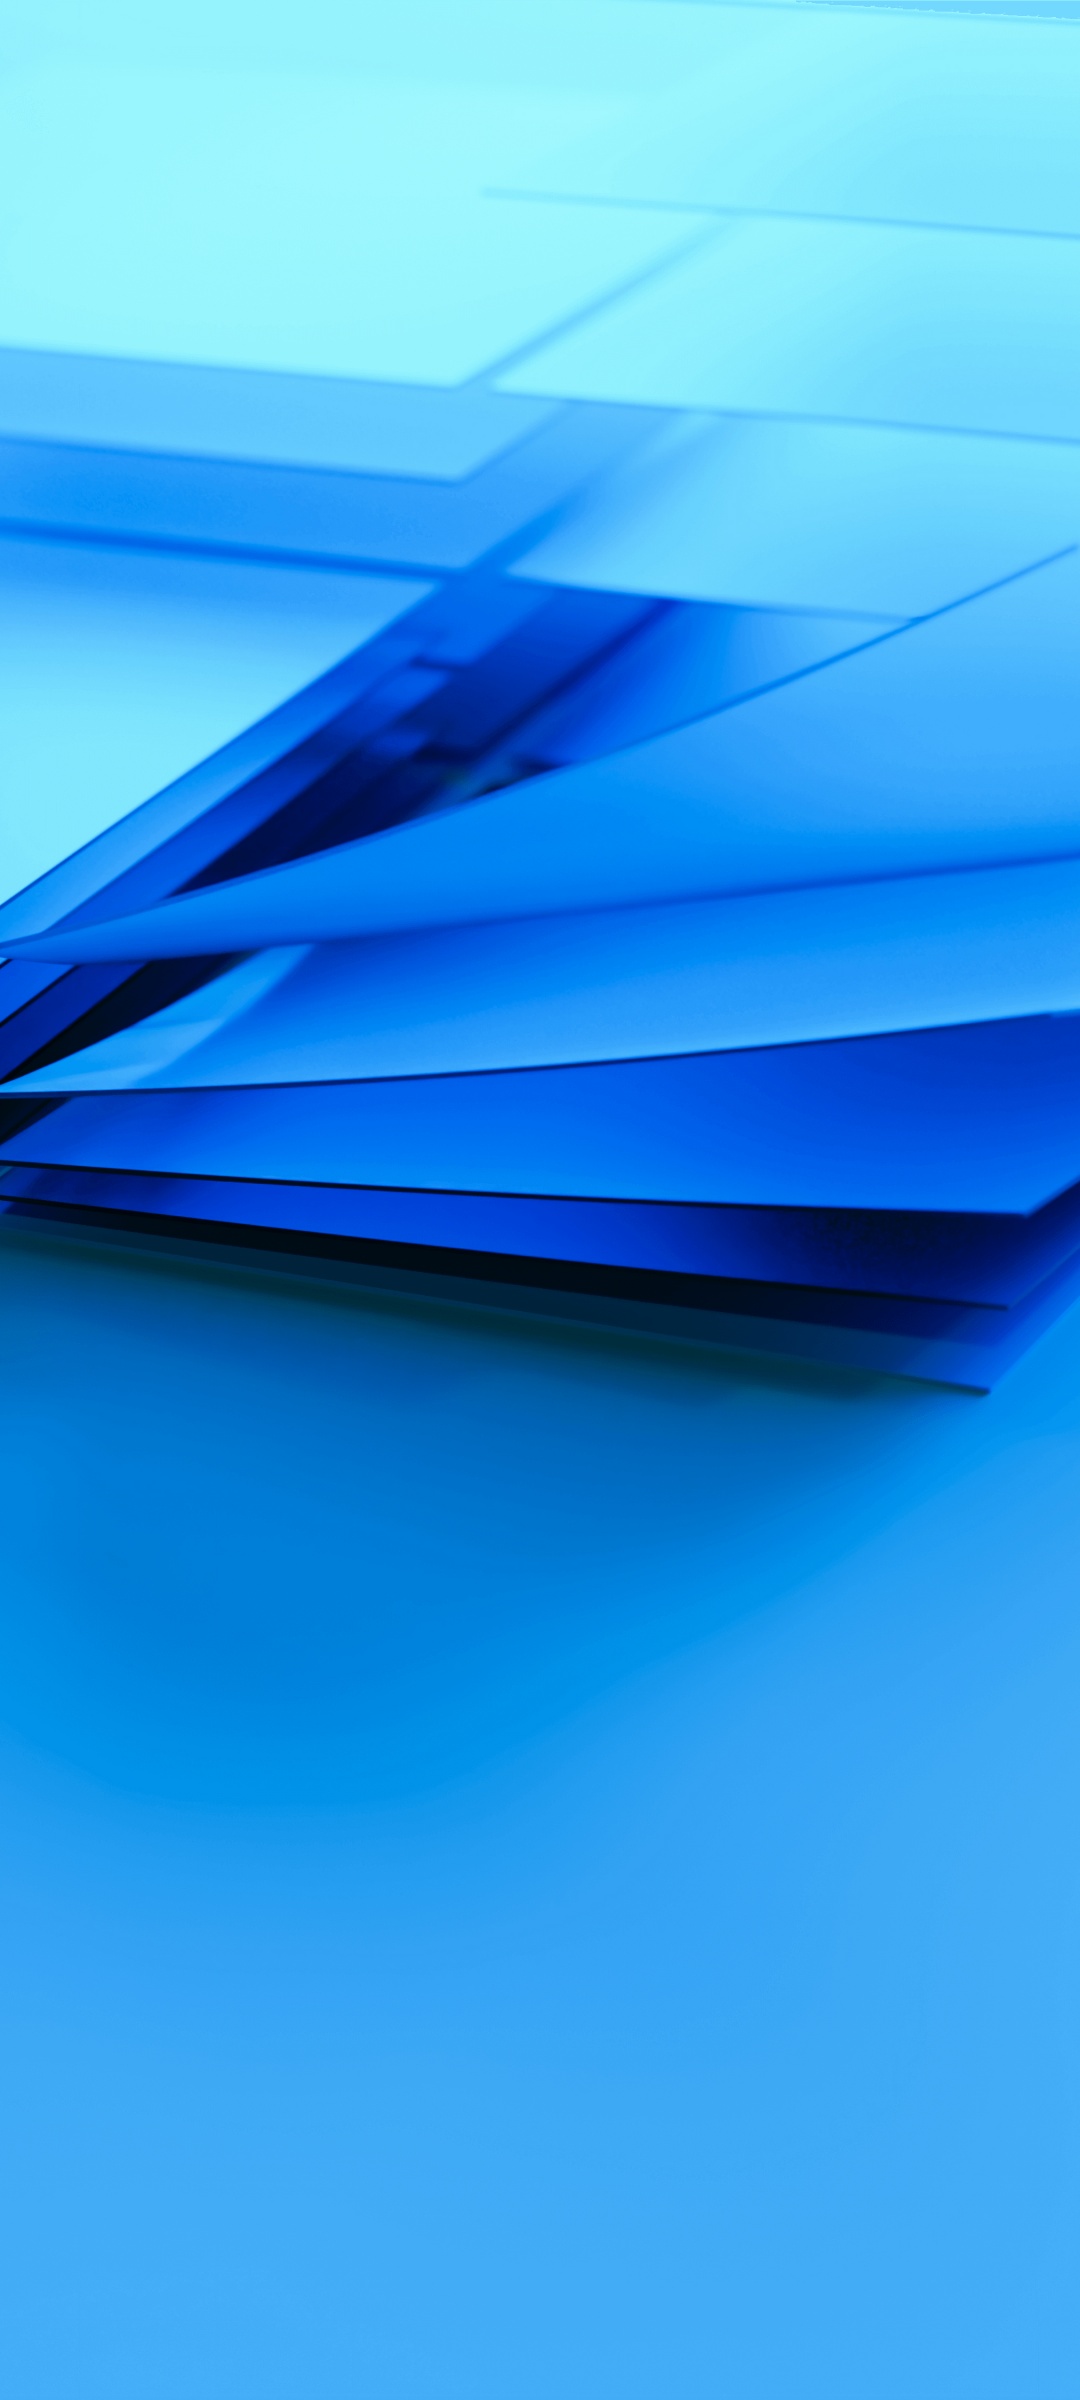 Thương hiệu Windows luôn là icon của sự tiện lợi và hiệu quả trong công nghệ. Hình nền logo Windows này được thiết kế sáng tạo và đầy sức mạnh, tạo cho bạn cảm giác tự tin, đồng thời làm nổi bật màn hình máy tính của bạn.